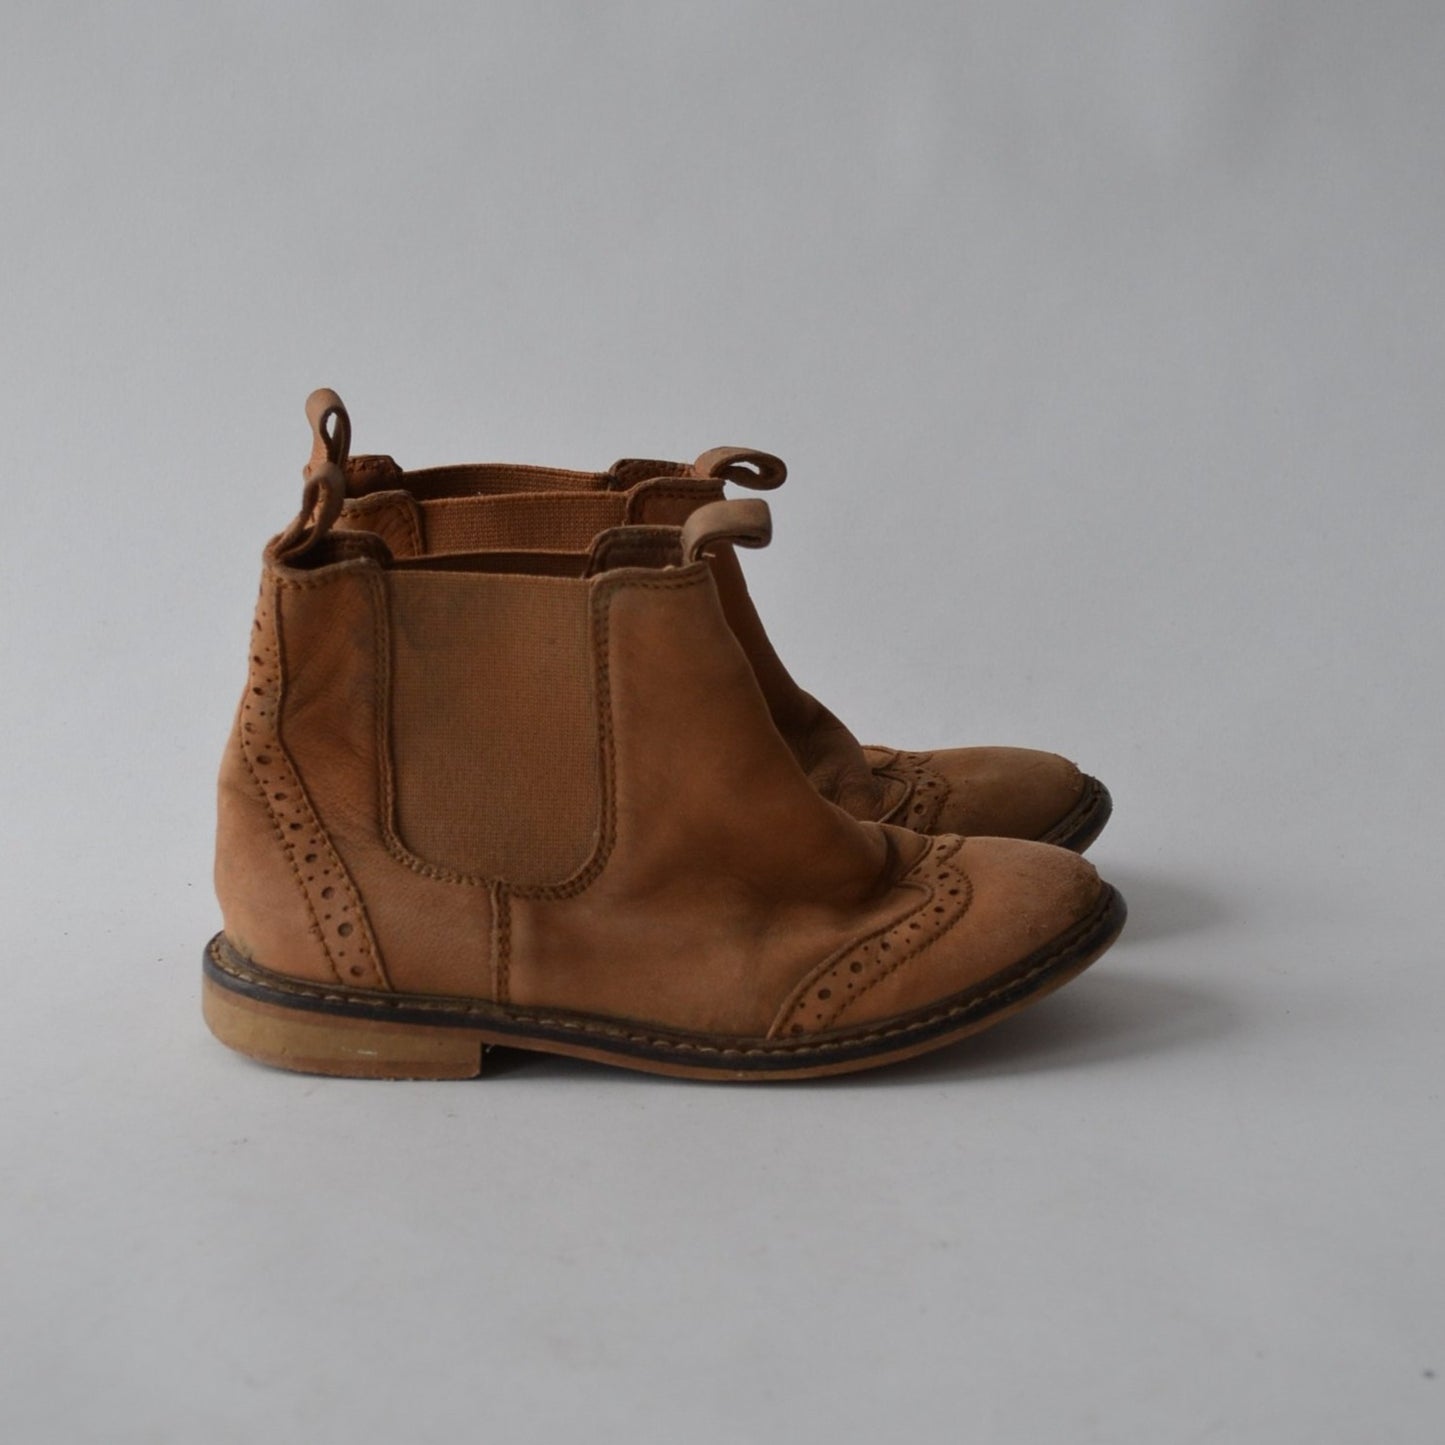 H&M Beige Leather Boots Shoe Size 11.5 (jr)